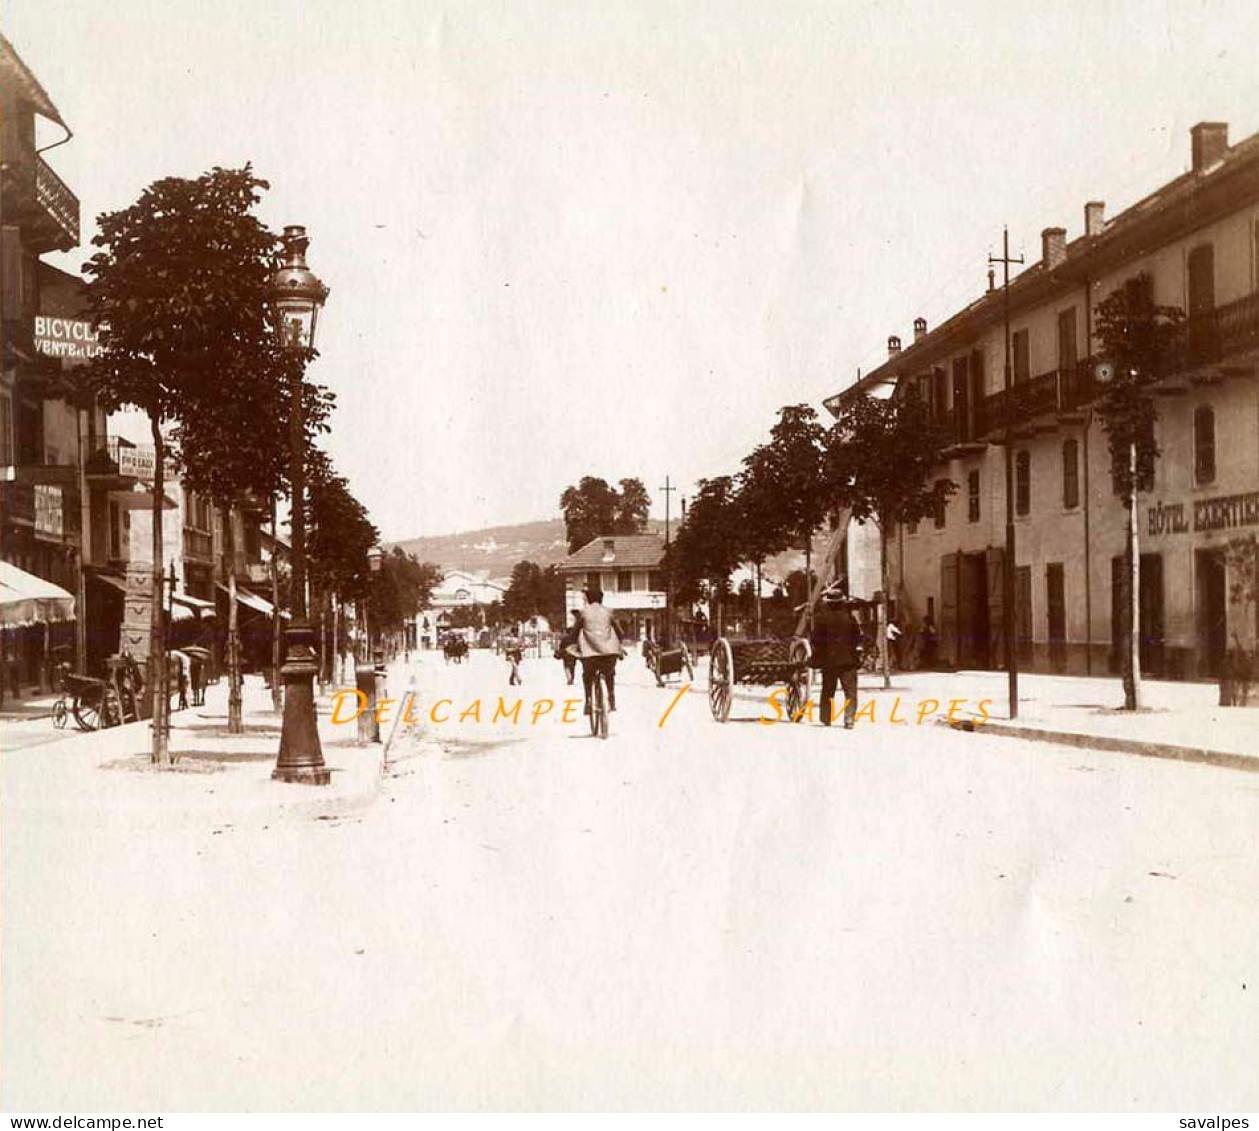 Savoie 1897 * Aix-les-Bains, Thermes, Arc Campanus, Rue De Genève Hôtel Exertier * 4 Photos Originales - Orte